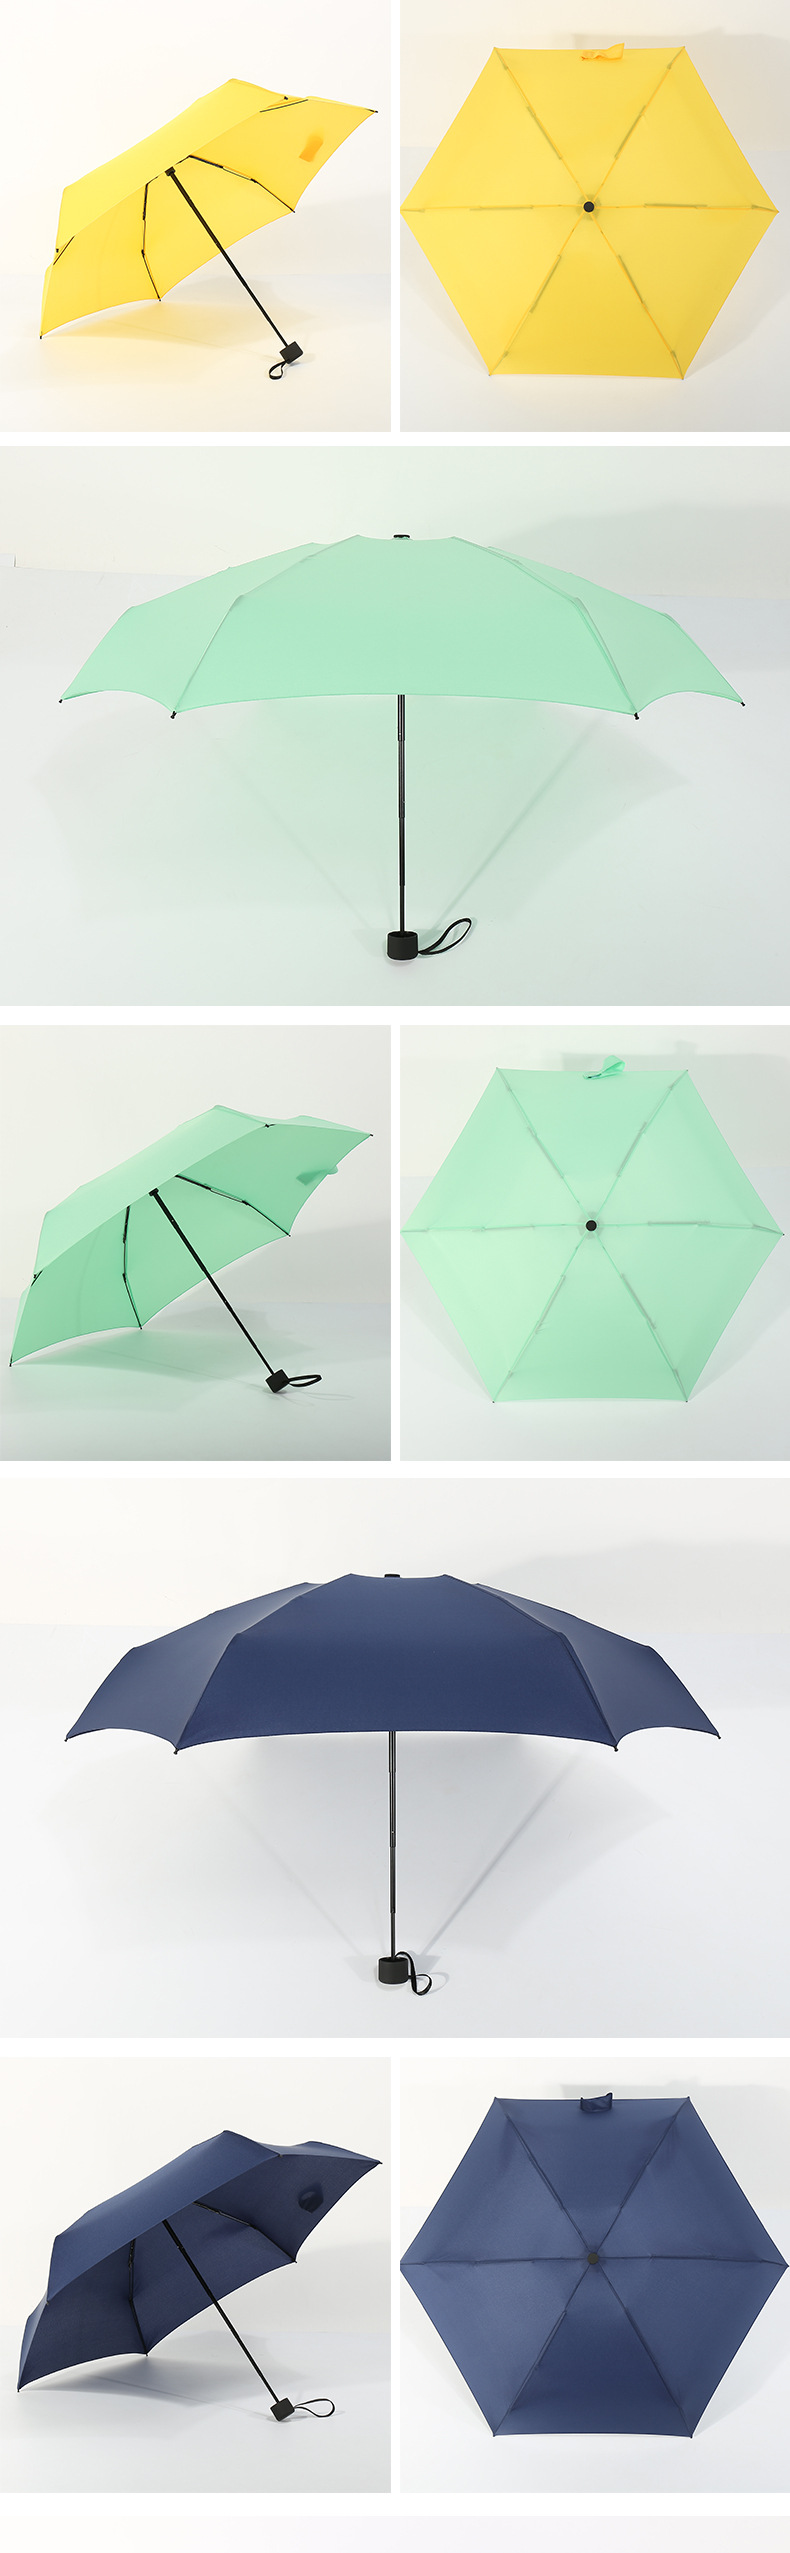 口袋雨伞